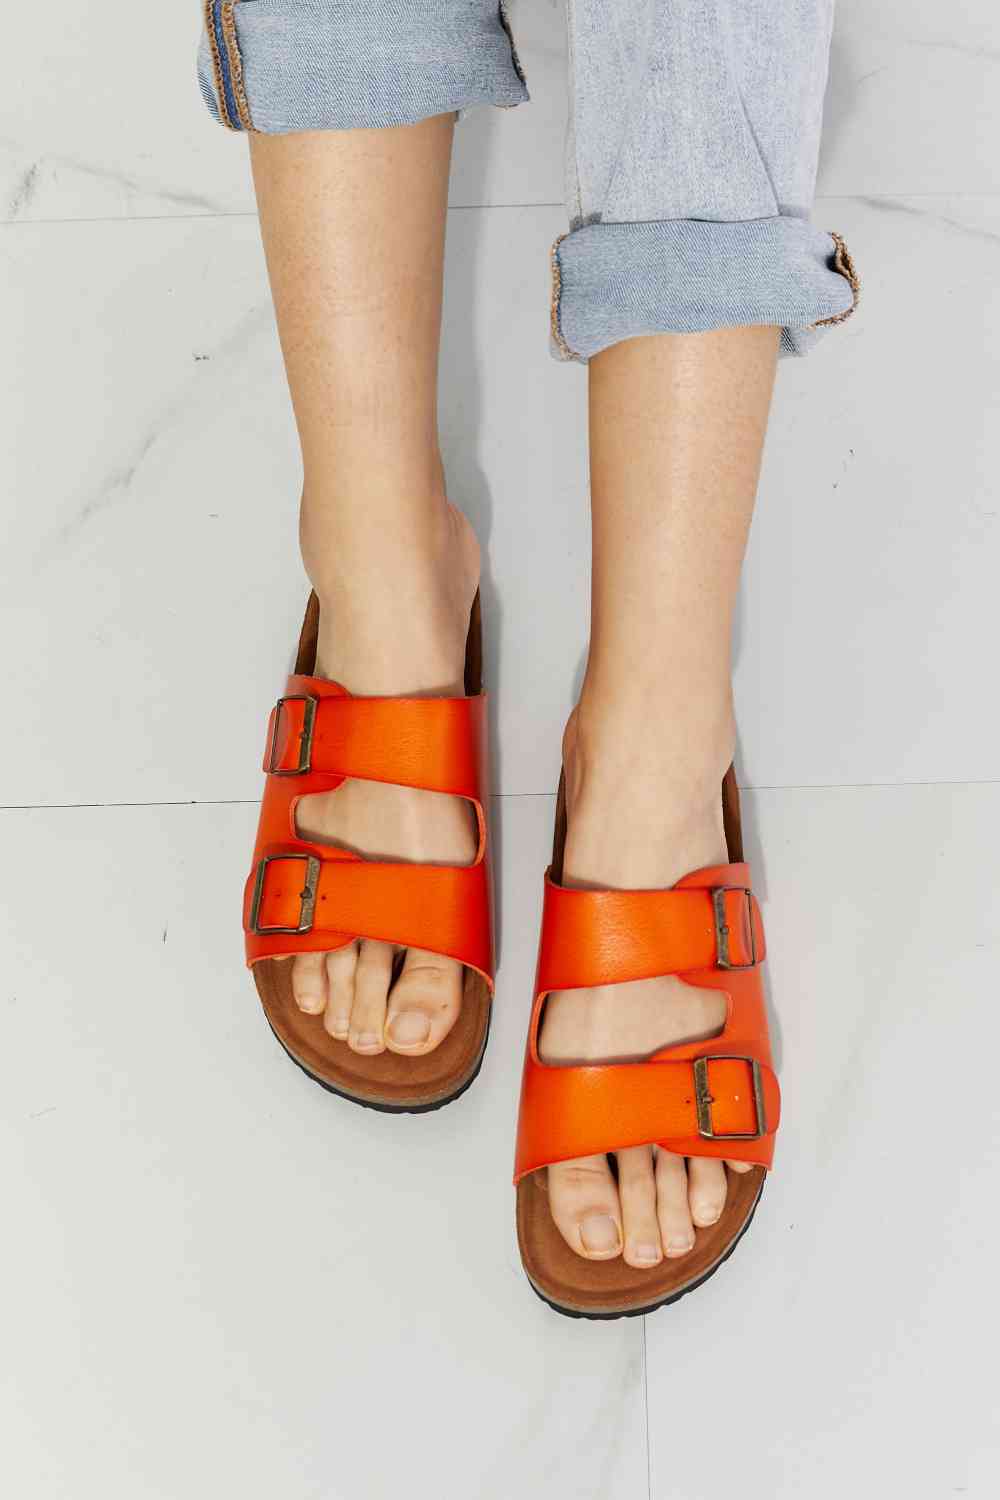 MMShoes Feeling Alive Double Banded Slide Sandals in Orange - Opulence & Essence